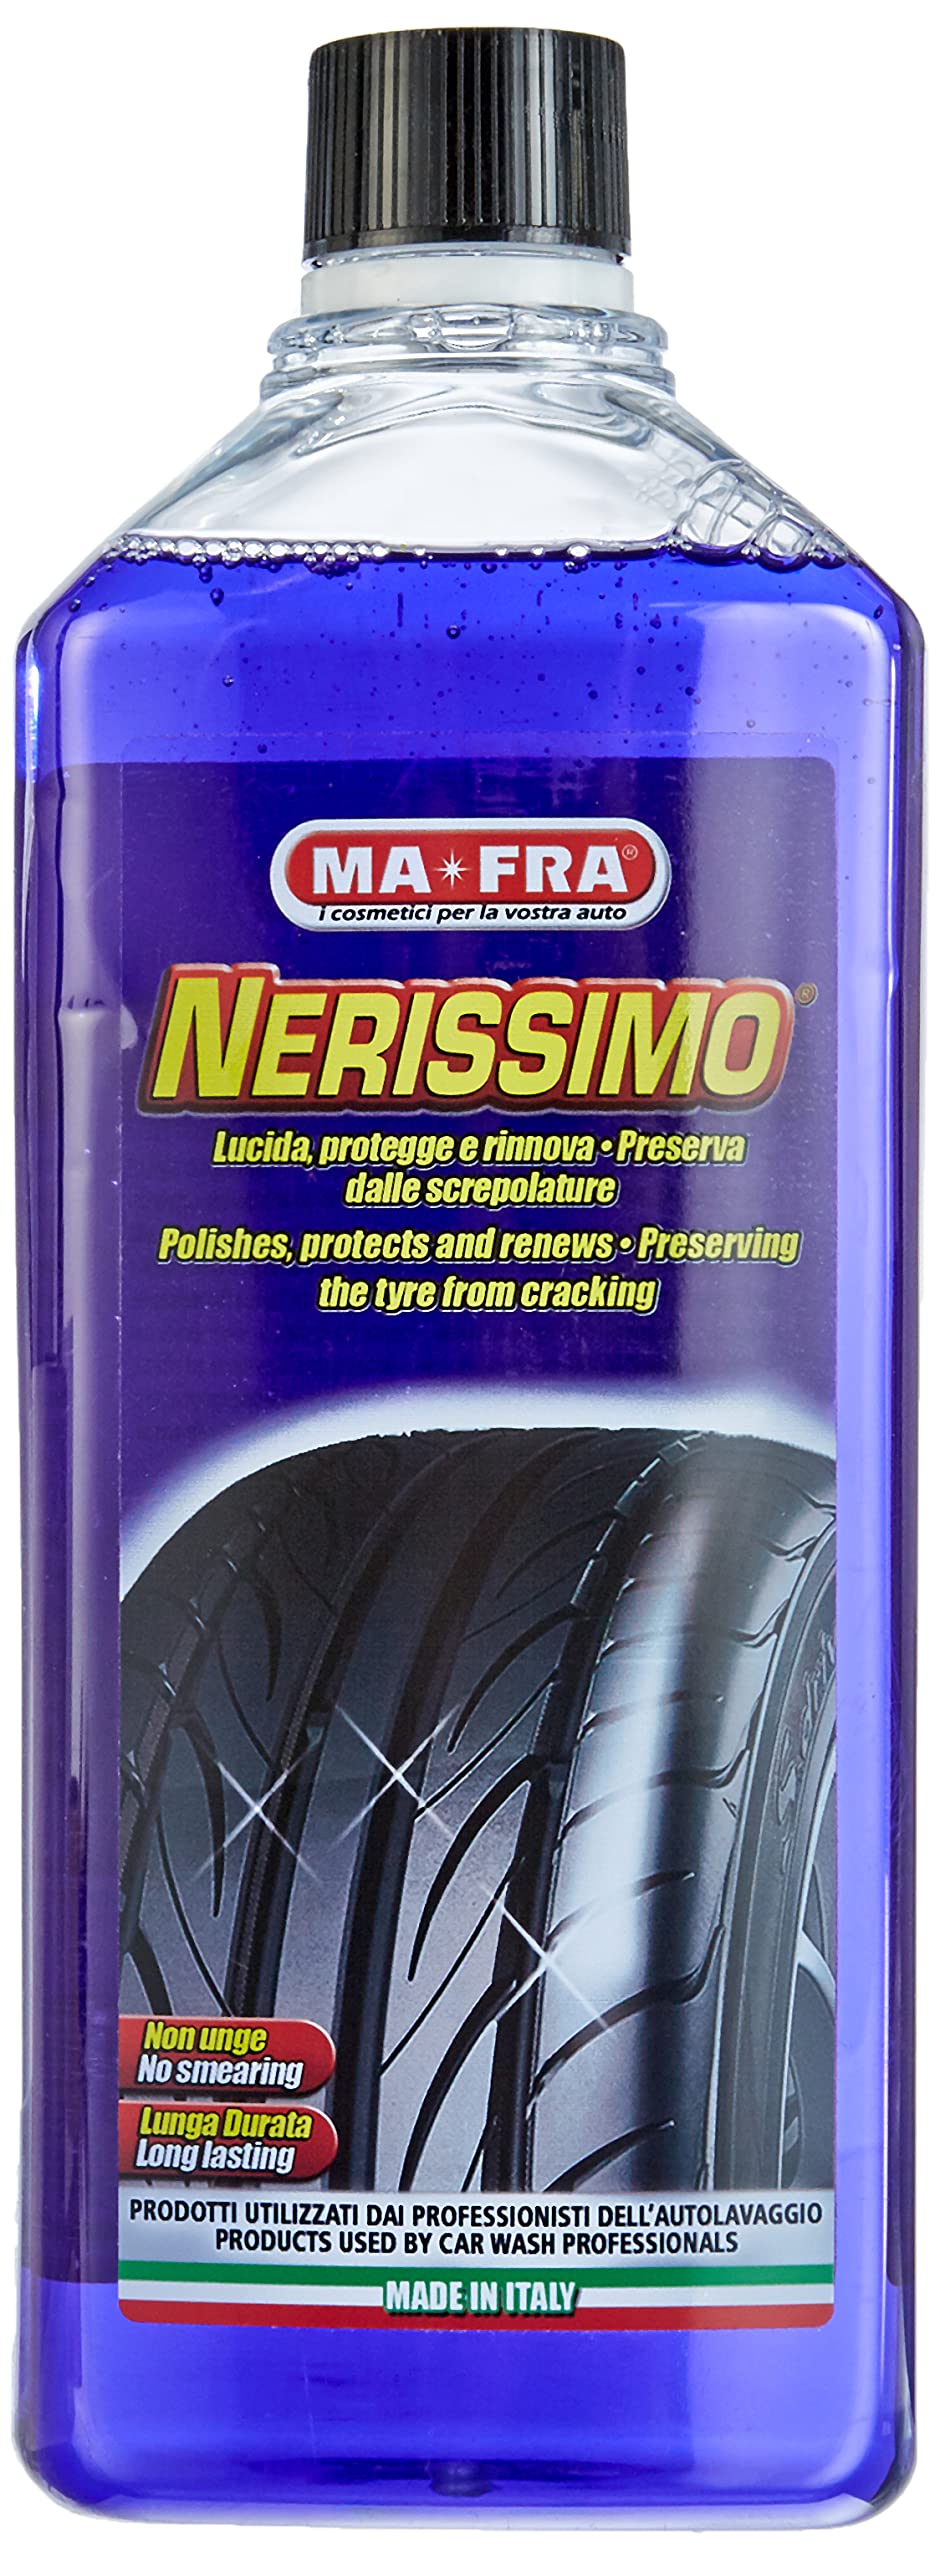 Ma-Fra, Nerissimo, flüssiges Konzentrat für Reifen, hohe Deckkraft, schützt, reaktiviert und bewahrt die Farbe ohne zu schmieren, 1000 ml von Mafra